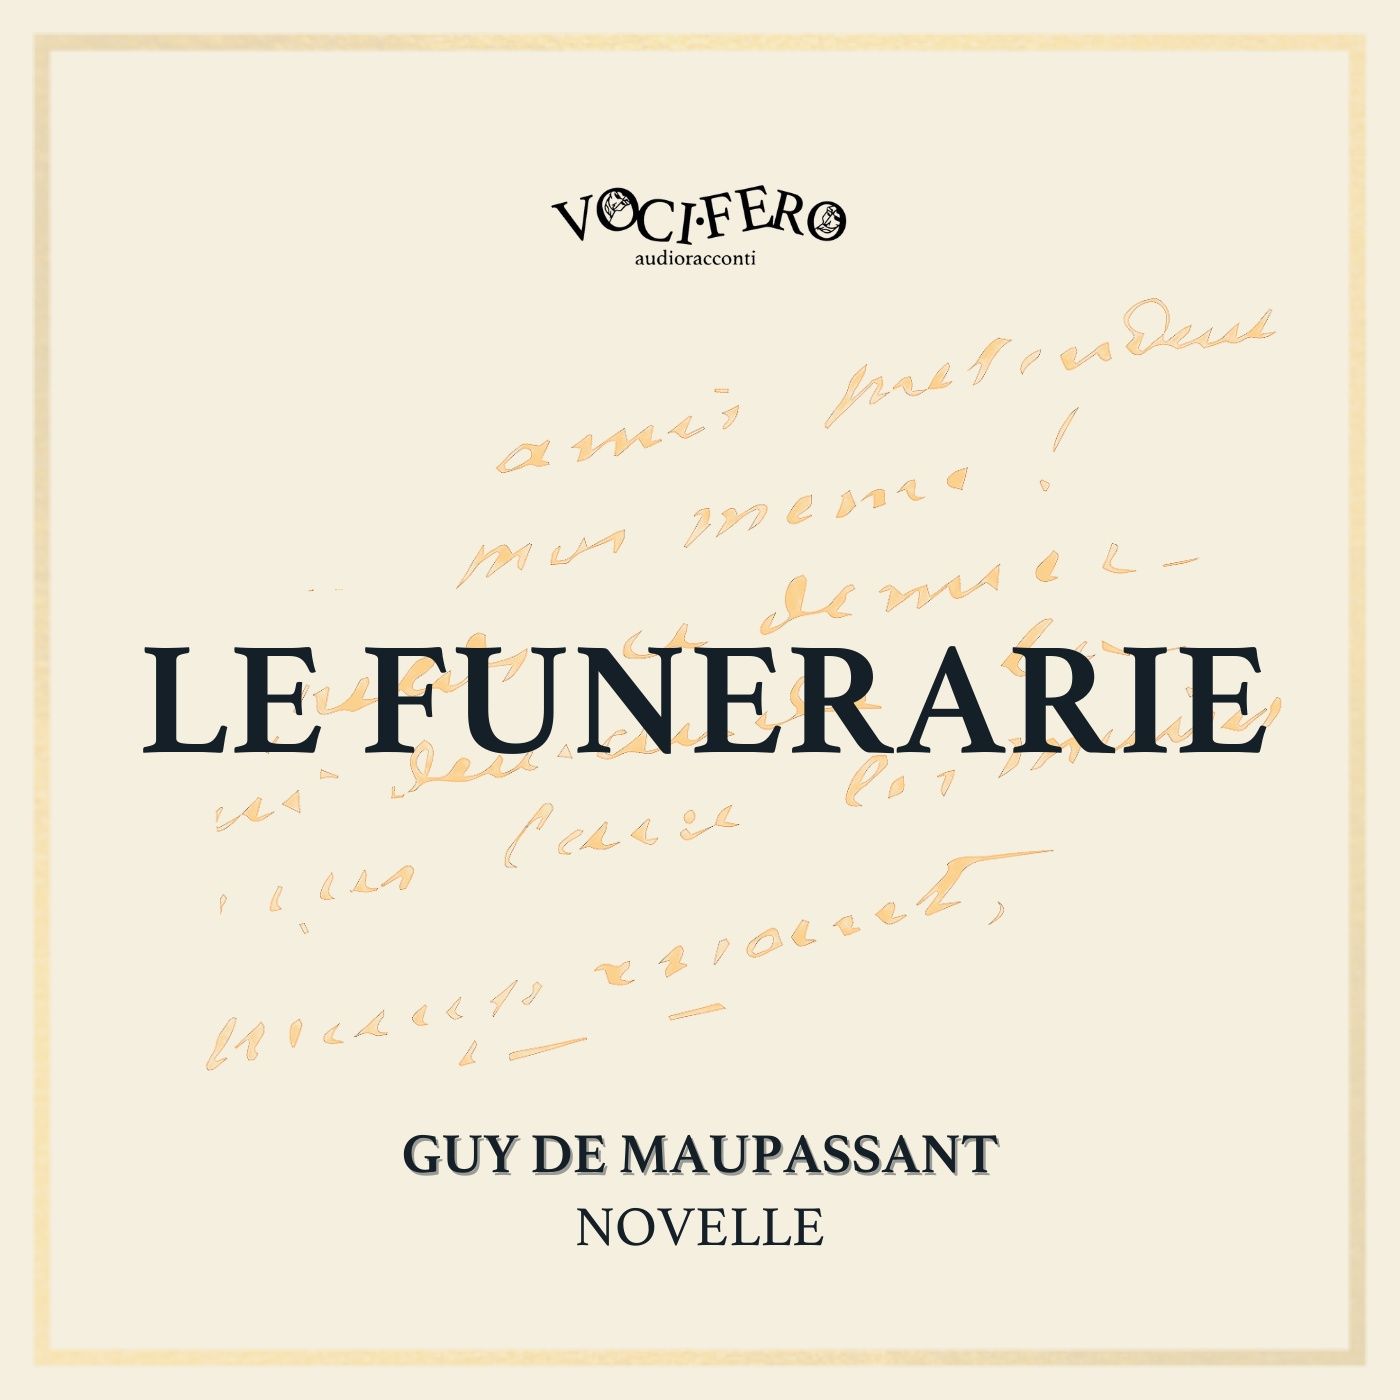 #7 Le Funerarie - Guy de Maupassant - novelle - vocifero